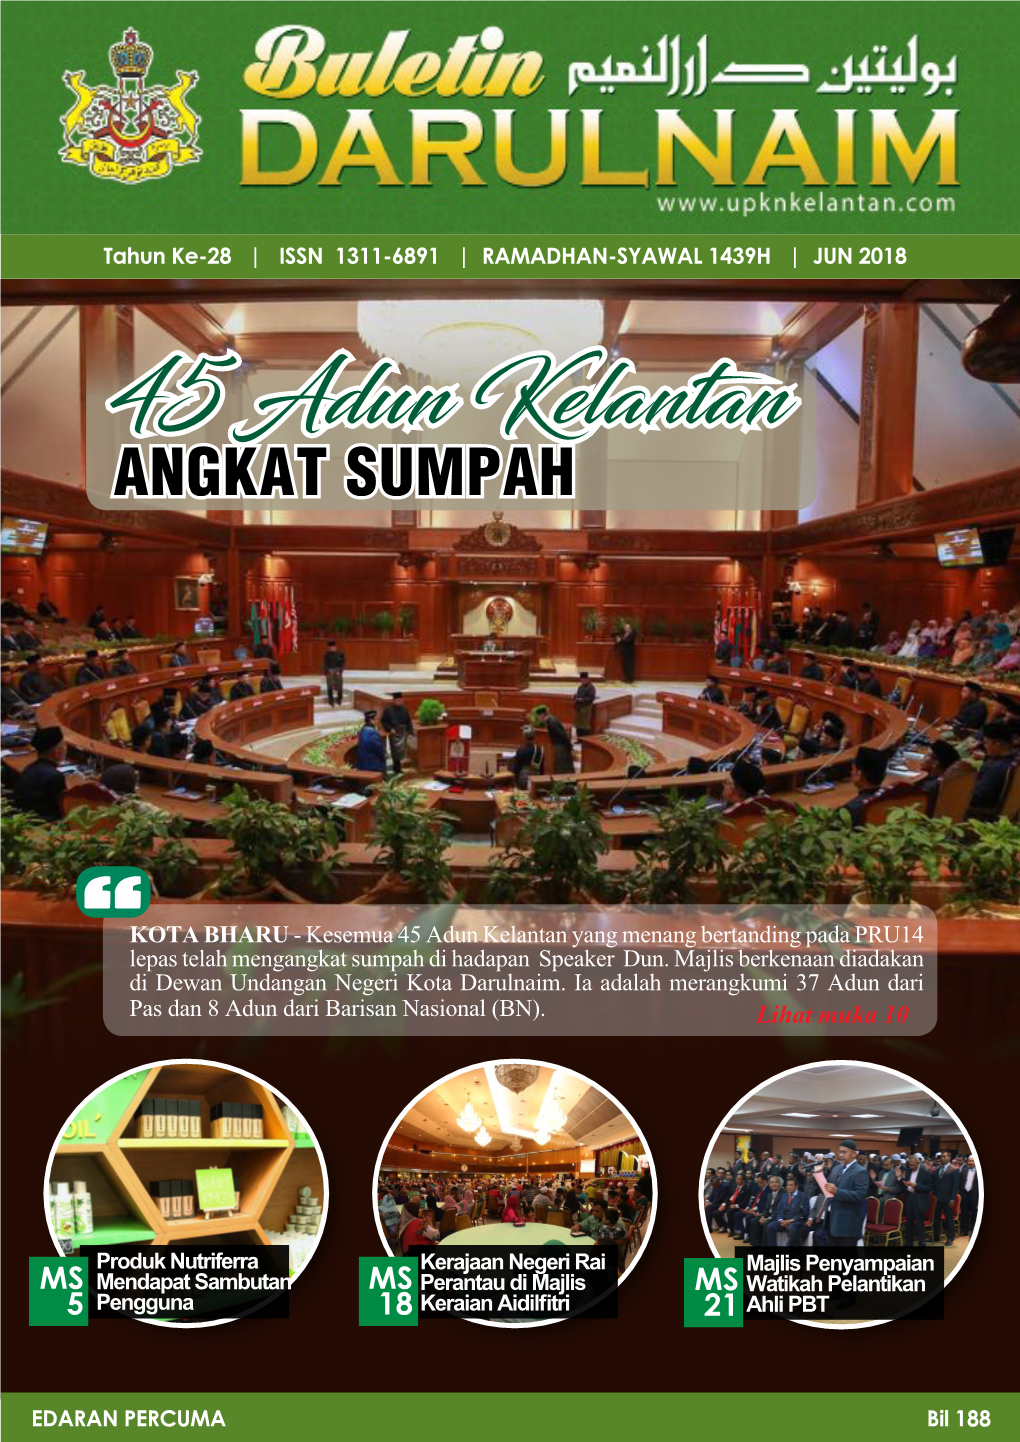 45 Adun Kelantan ANGKAT SUMPAH